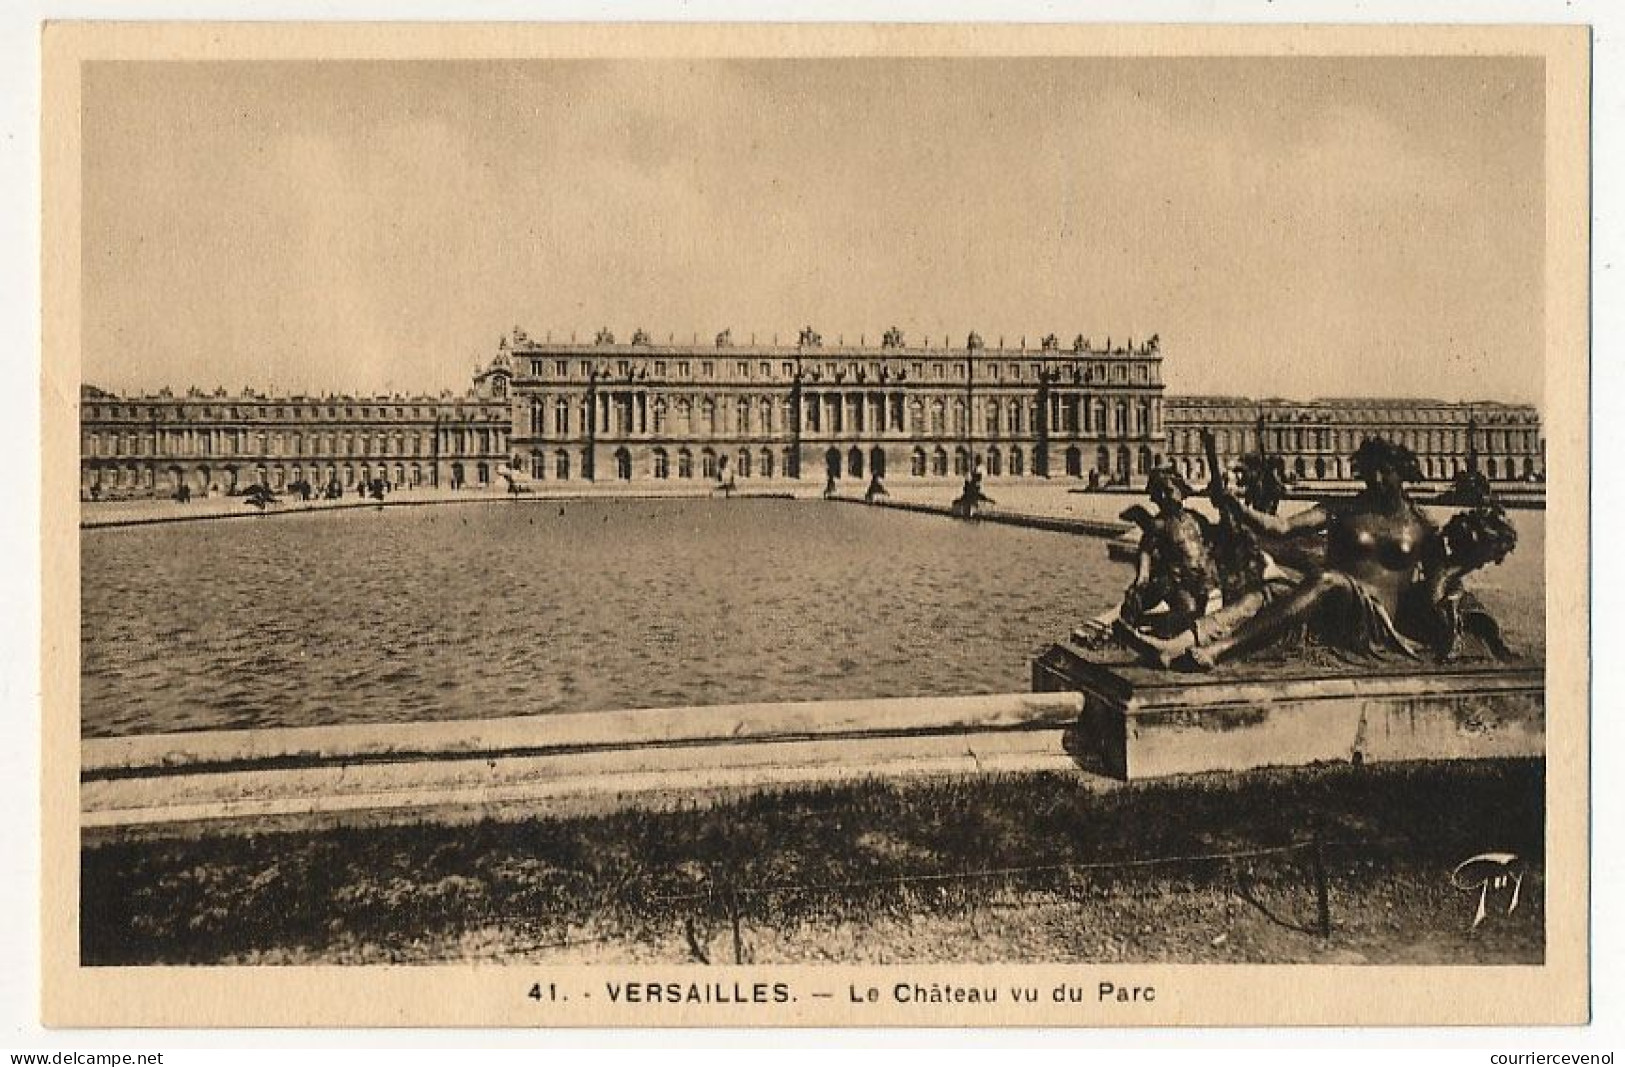 FRANCE - CPSM  Affr 18F Versailles Entrée - Obl Congrès Du Parlement Versailles 17/12/1953 - Le Château ... - Cachets Provisoires